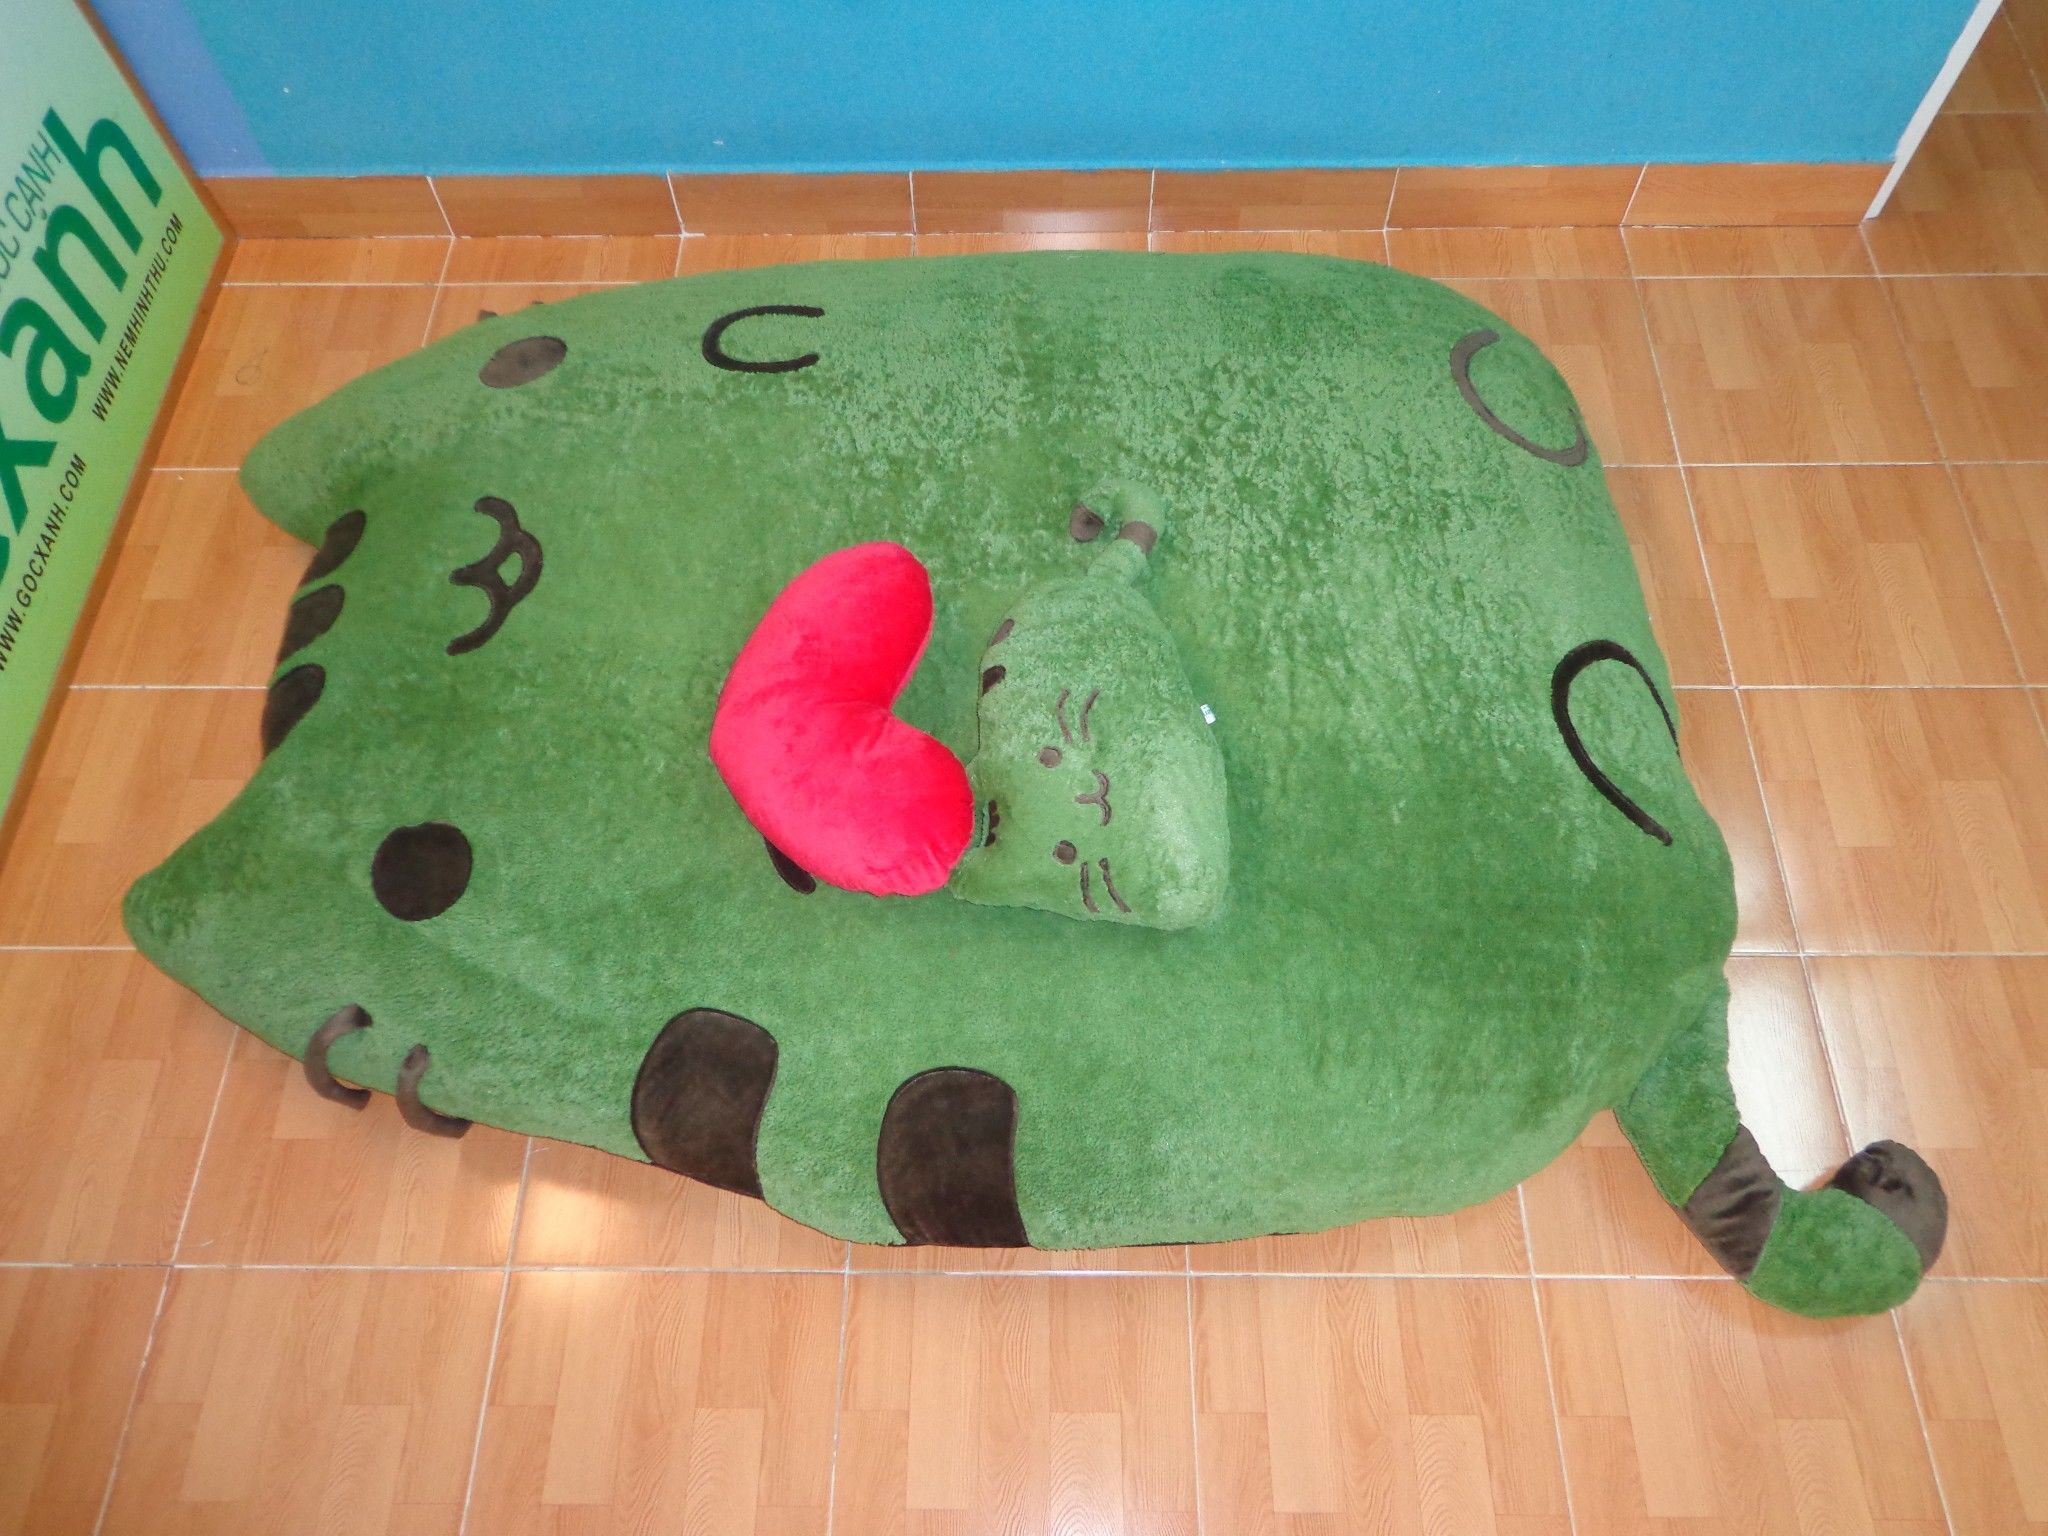 Nệm mèo Pusheen xanh rêu cá tính (1.6 x 2.1m)